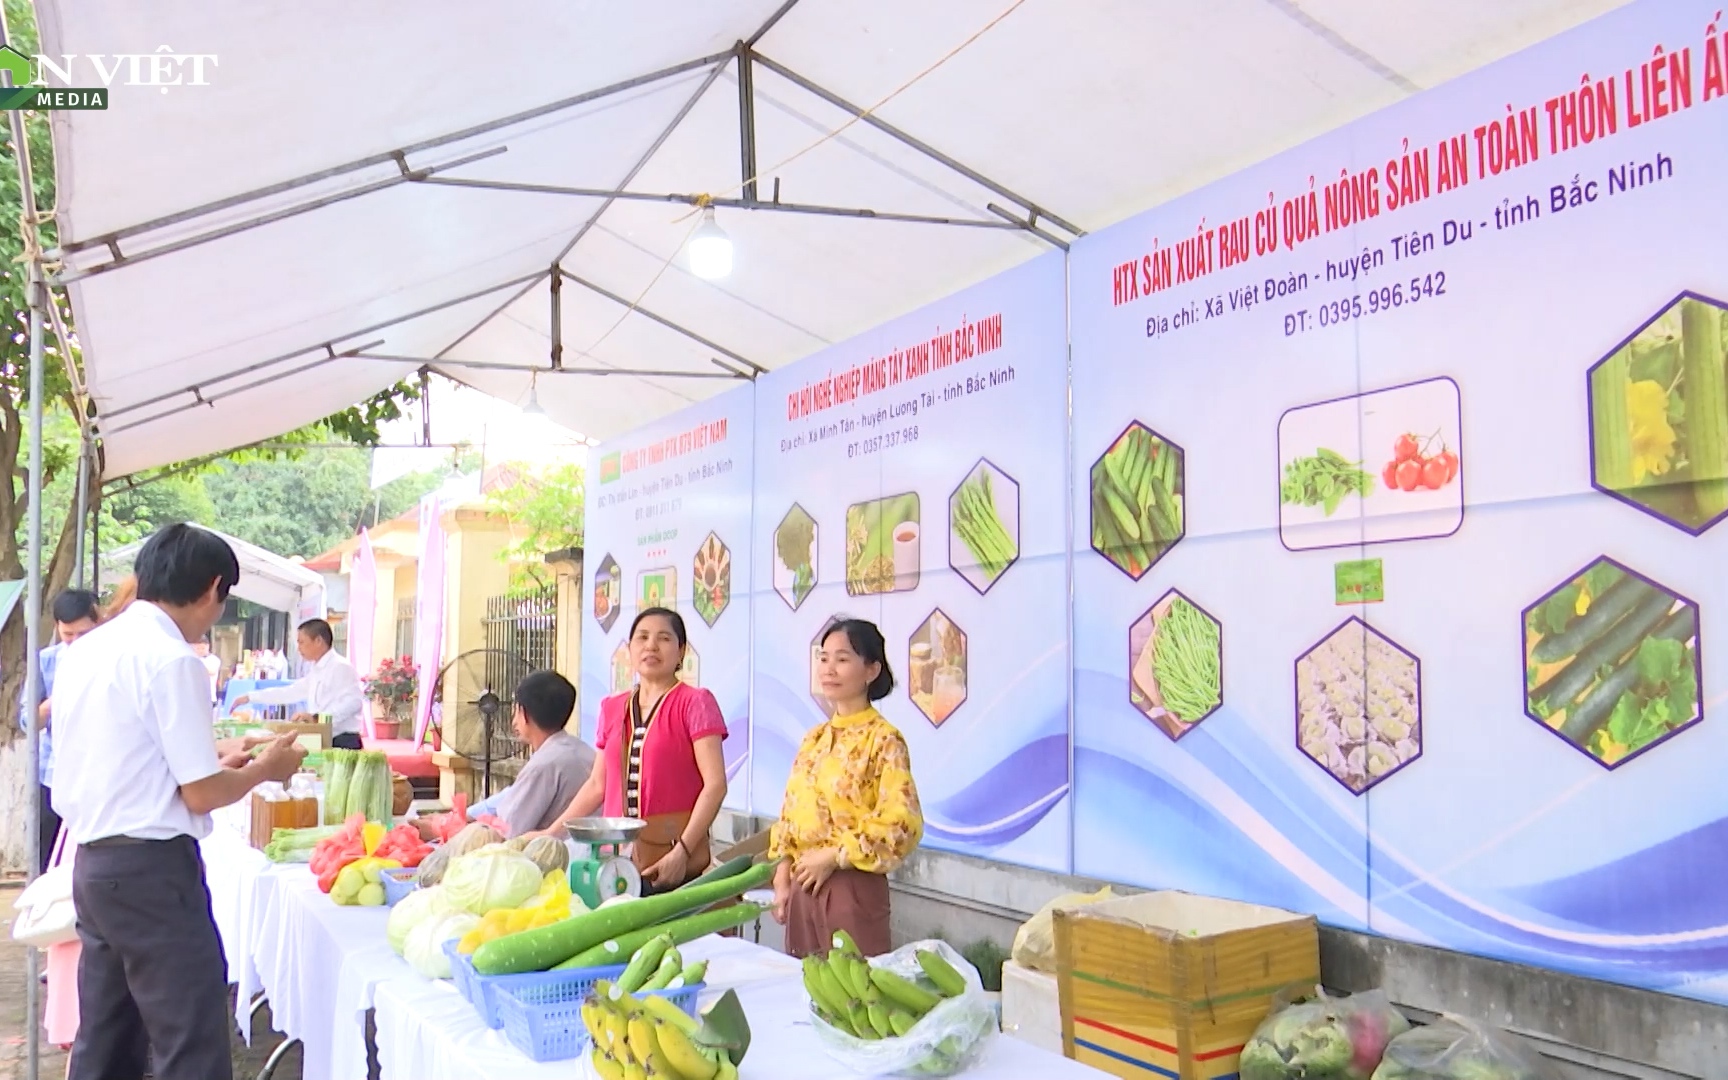 Bắc Ninh: HTX Liên Ấp ứng dụng khoa học kỹ thuật sản xuất rau an toàn cho năng suất cao, hiệu quả kinh tế lớn